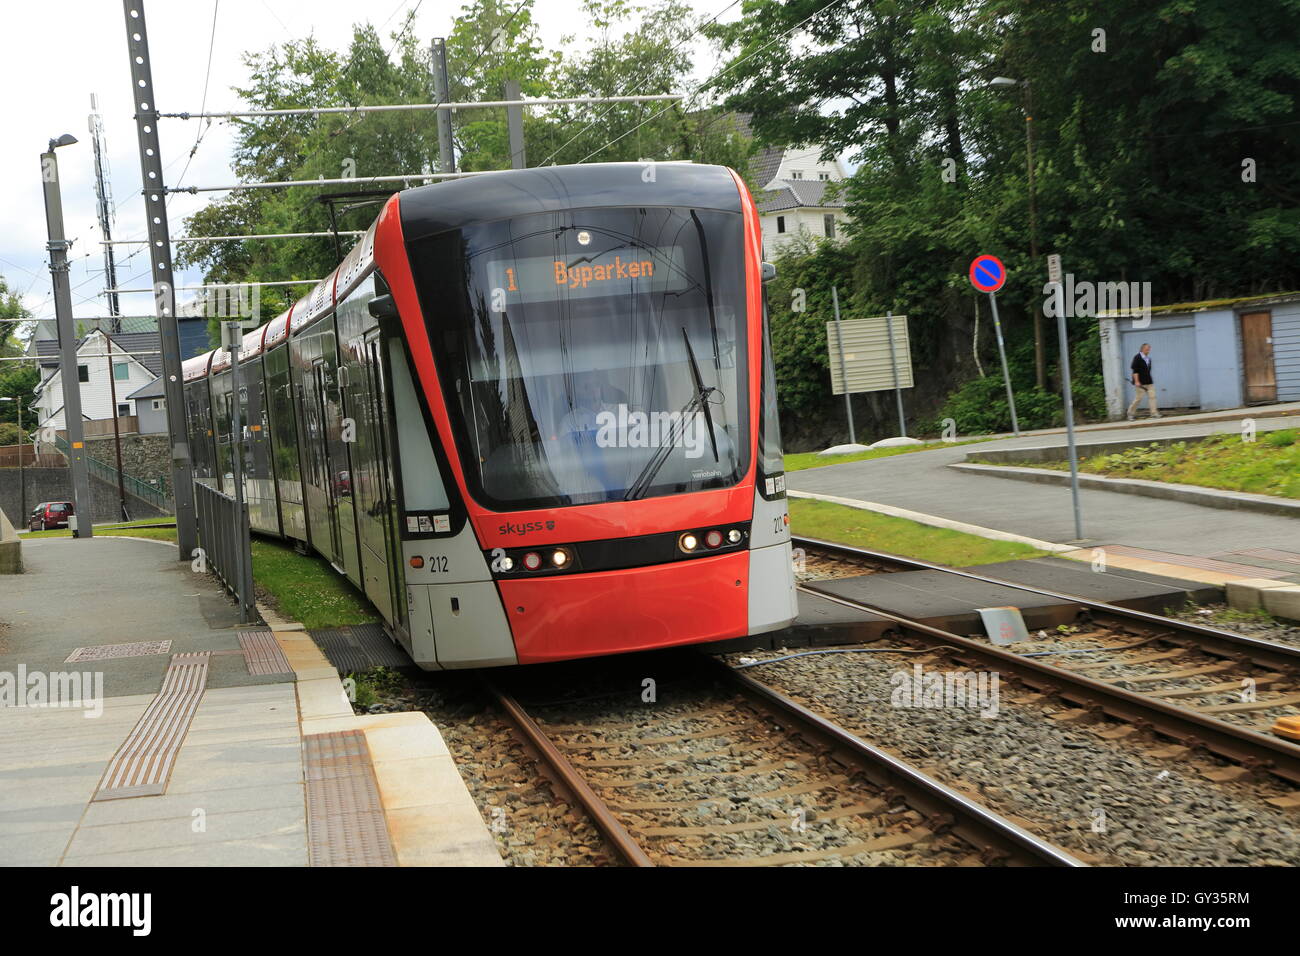 Système de transport léger sur rail city train tramway, Bergen, Norvège Byparken de destination Banque D'Images